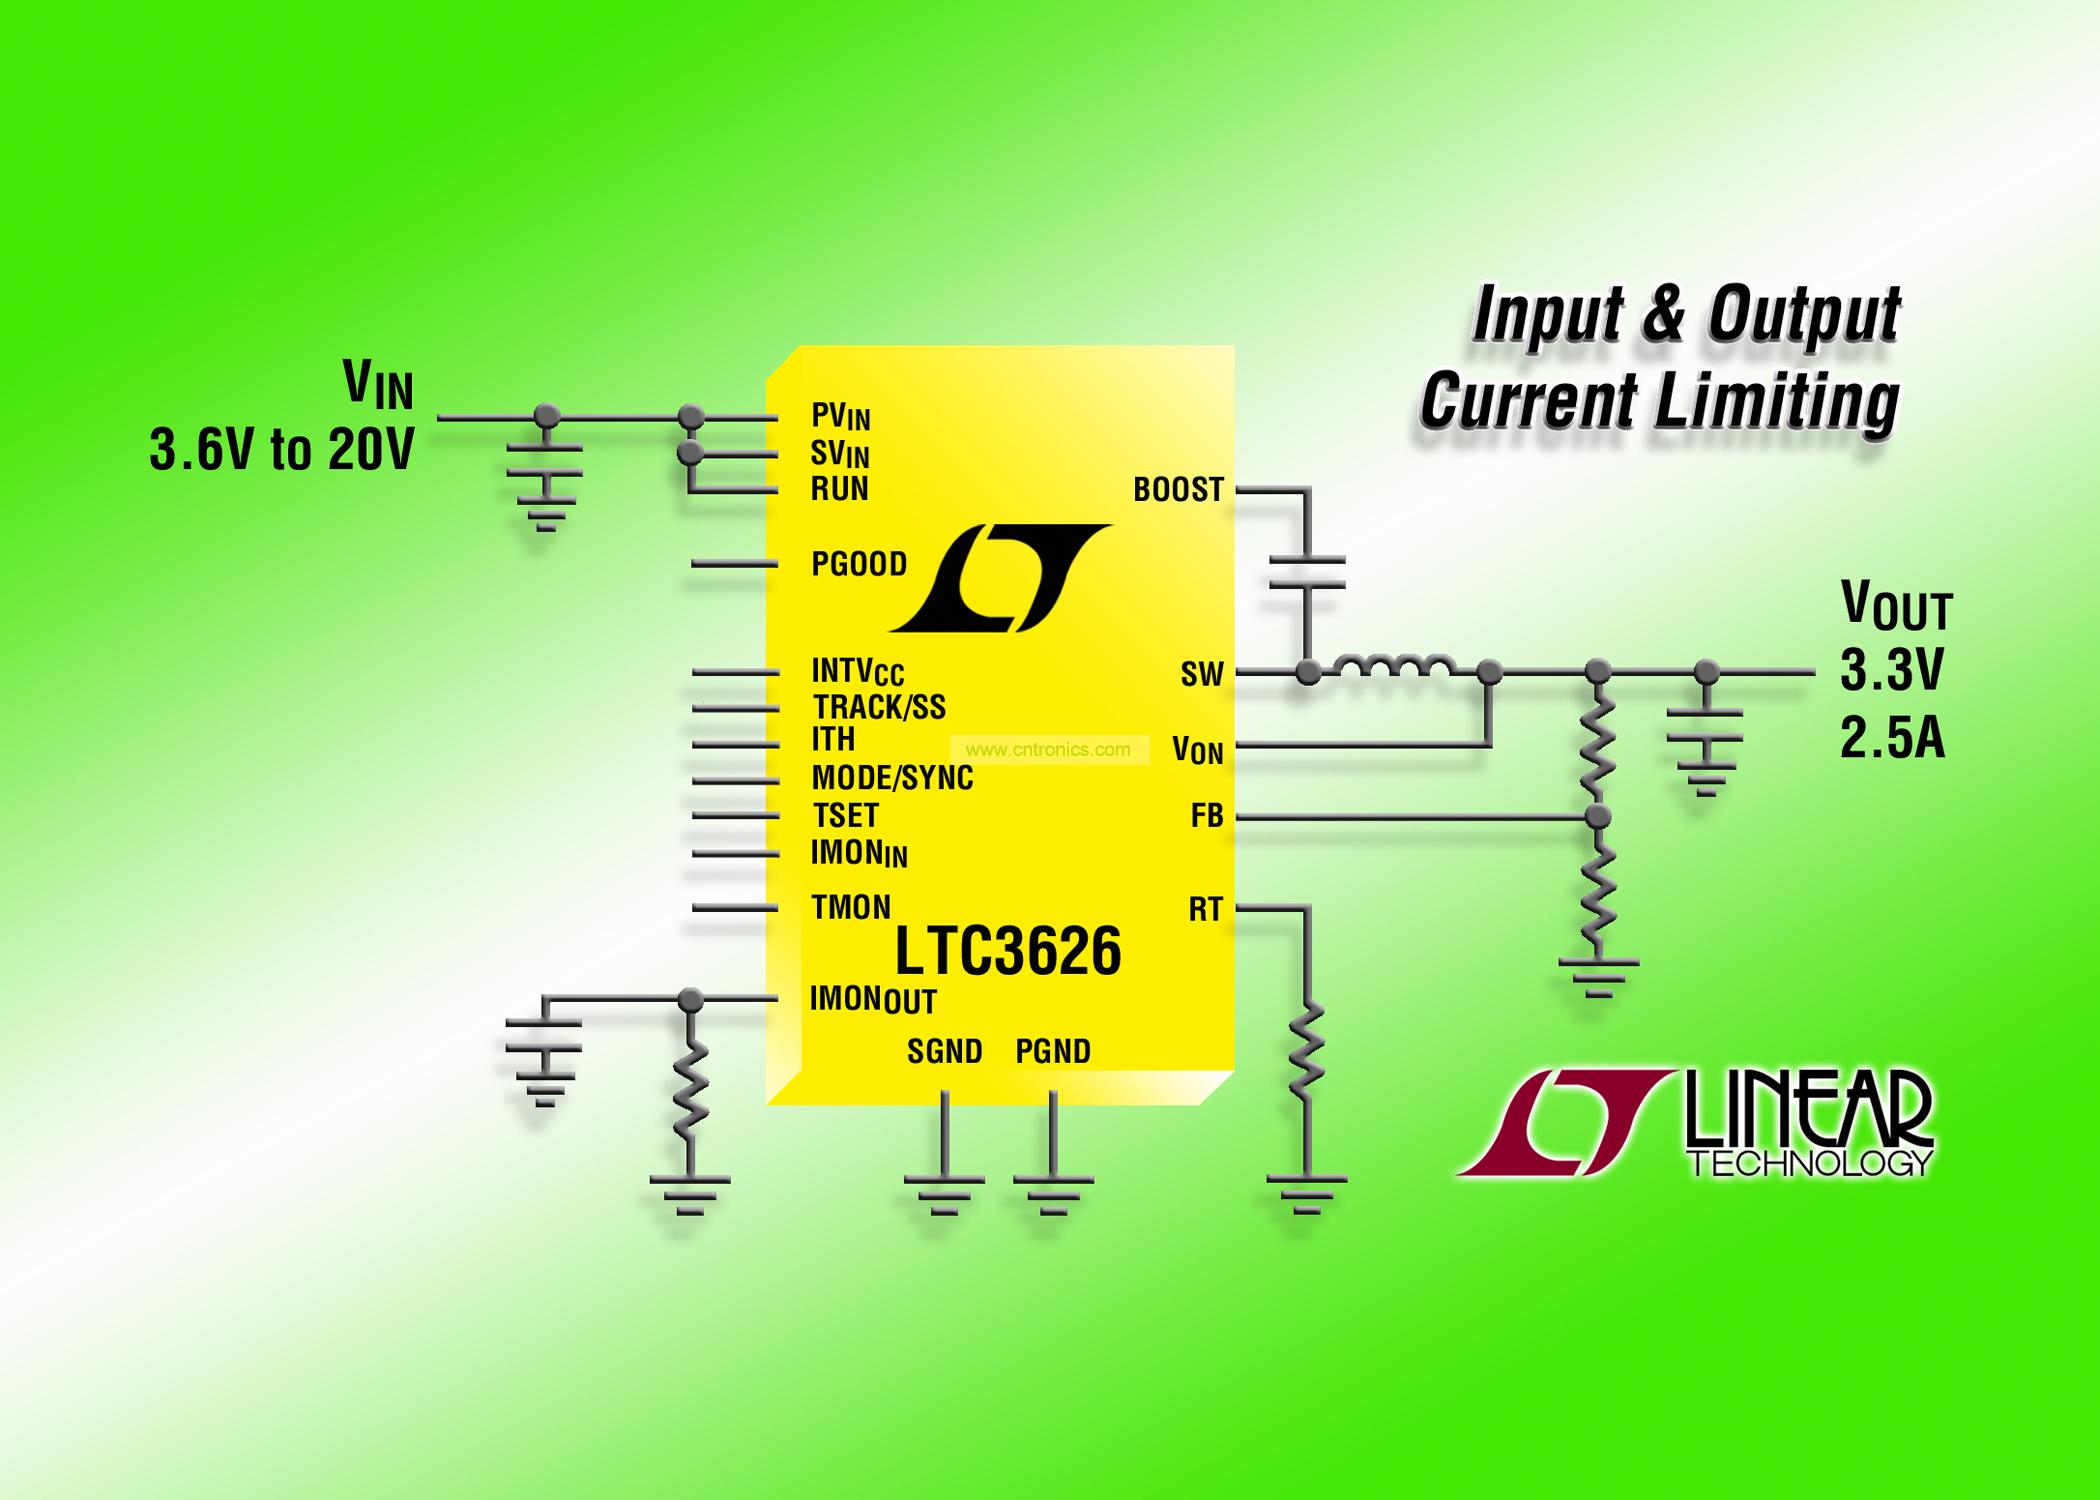 照片说明：LTC3626 提供高达 2.5A 的输出电流